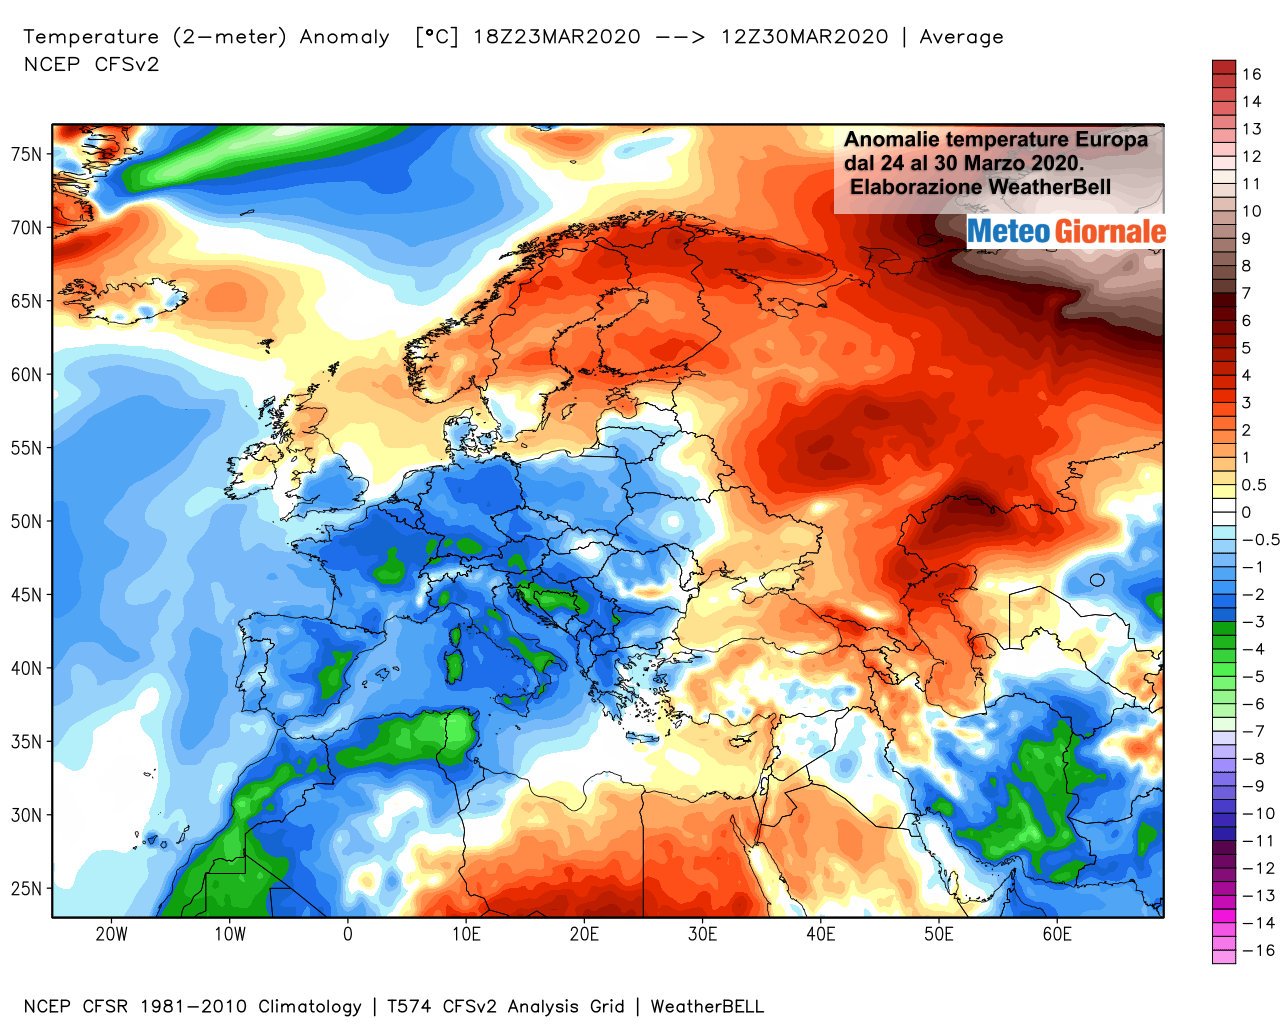 clima,-l’europa-quasi-tutta-al-freddo!-inverno-arrivato-fuori-tempo-massimo